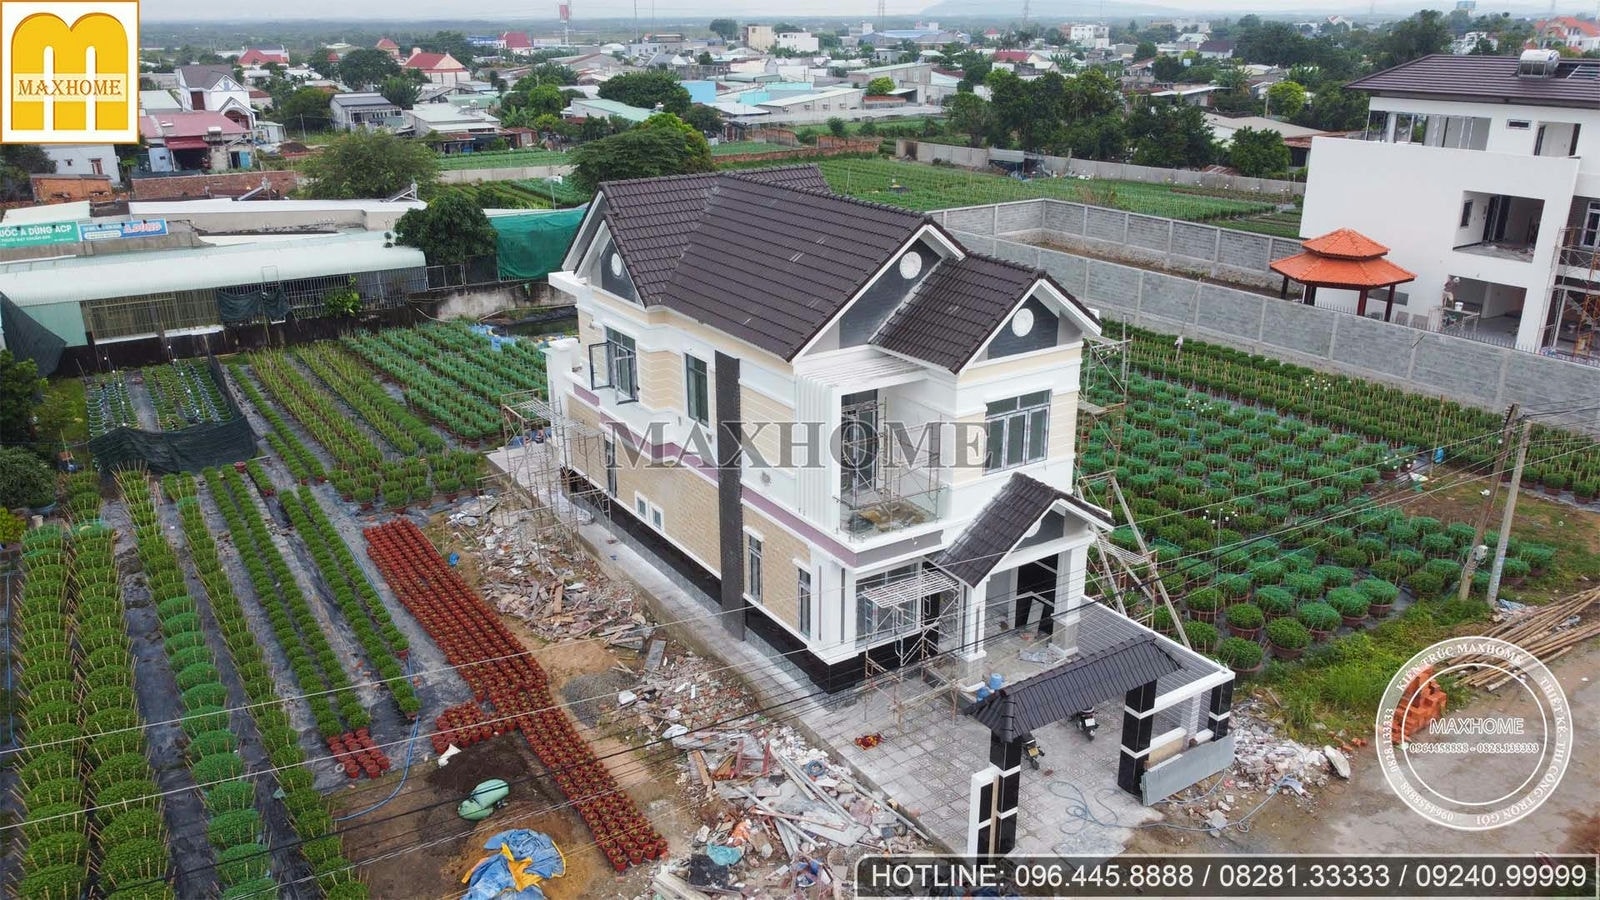 Khảo sát công trình nhà 2 tầng mái Thái hoàn thiện 90% tại Vũng Tàu